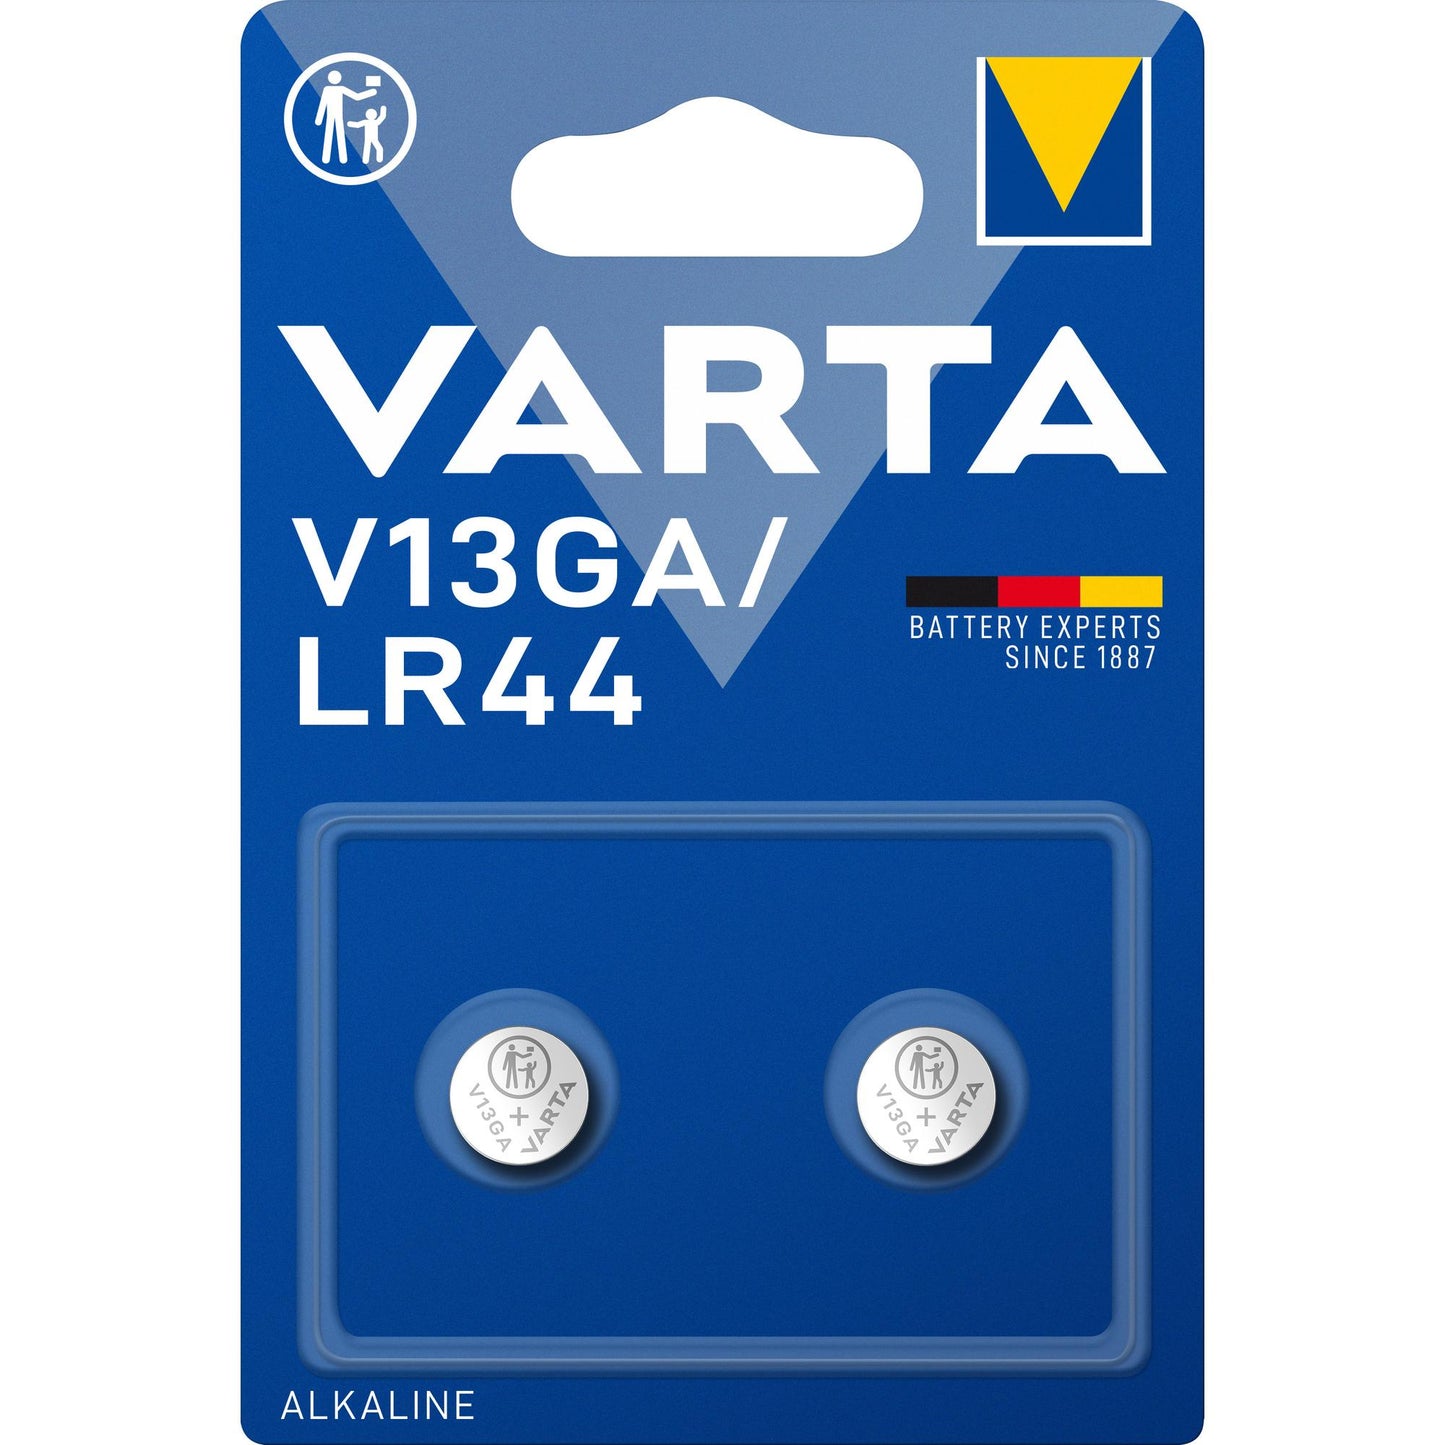 VARTA Batterie Alkaline Knopfzelle LR44, V13GA, 1.5V Electronics, Retail Blister (2-Pack)